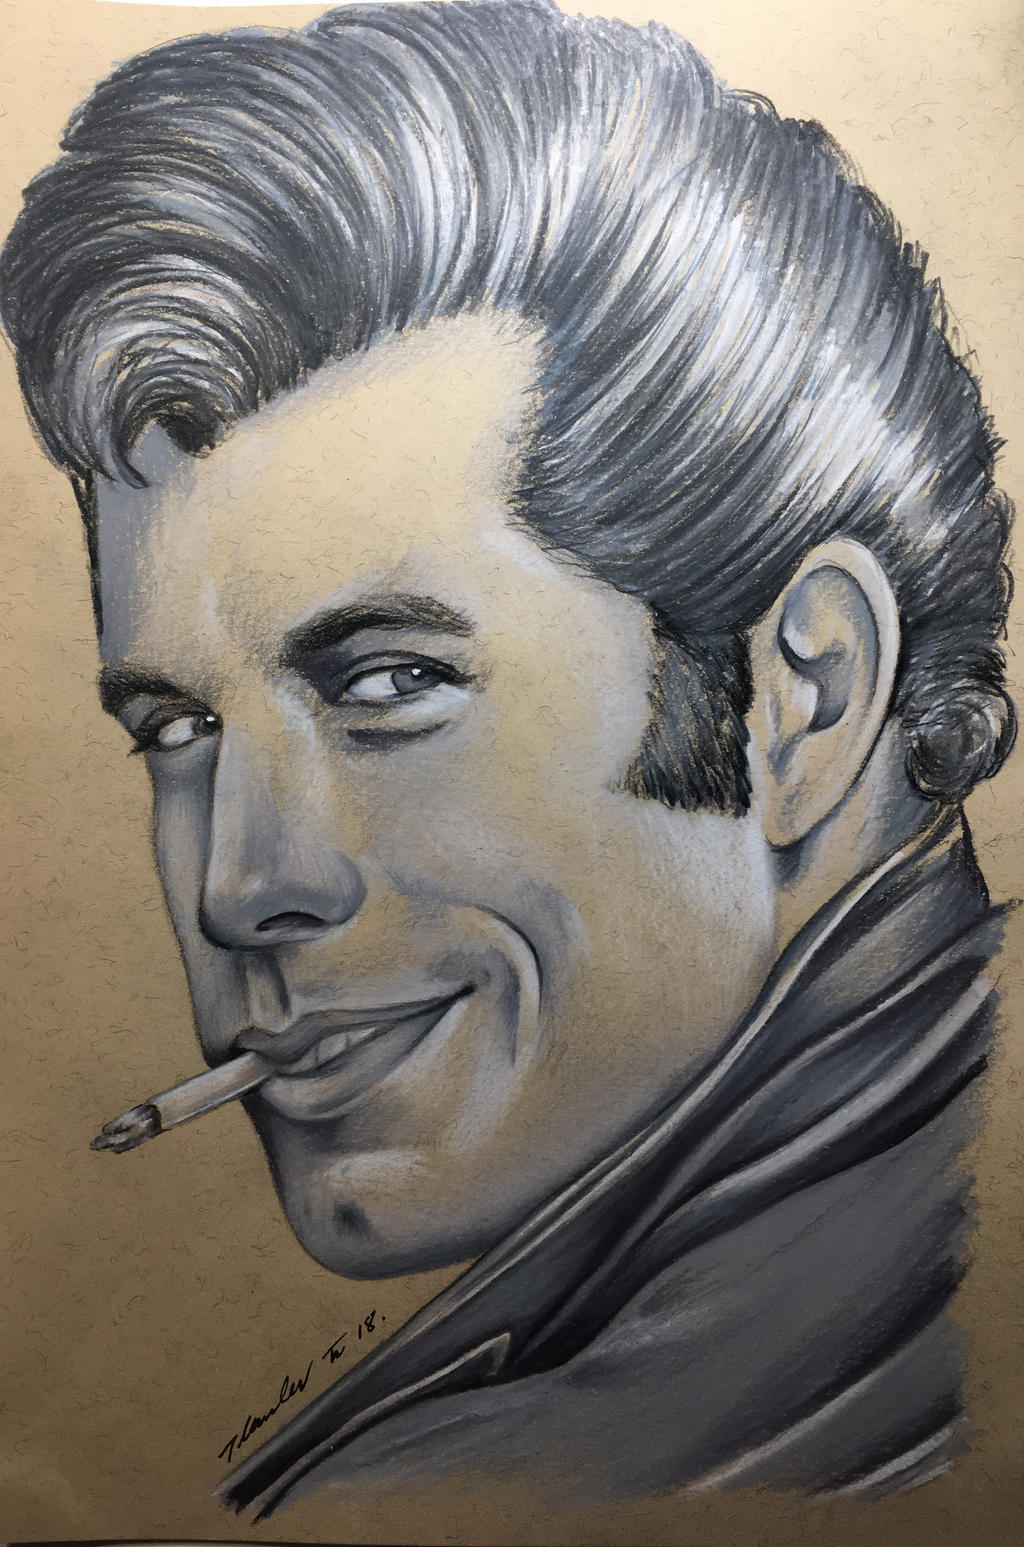 Danny Zuko Grease John Travolta by billyboyuk on DeviantArt